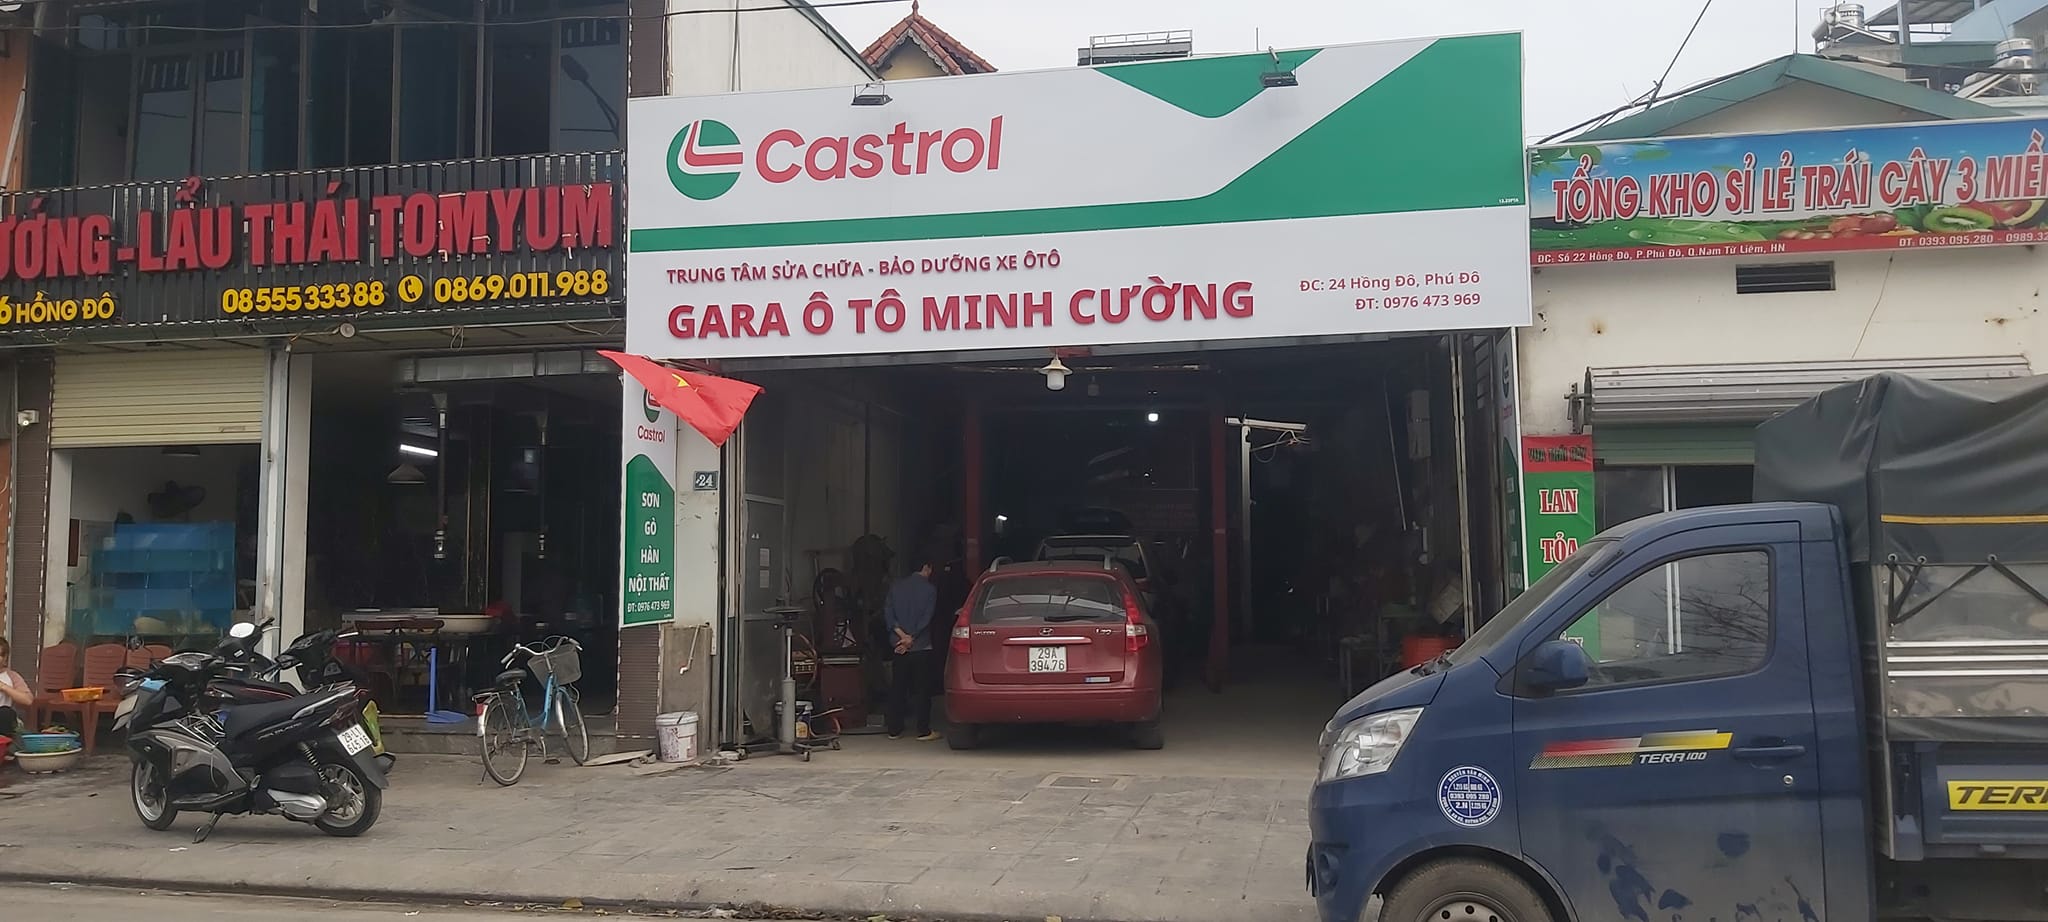 Garage Minh Cường ảnh 1